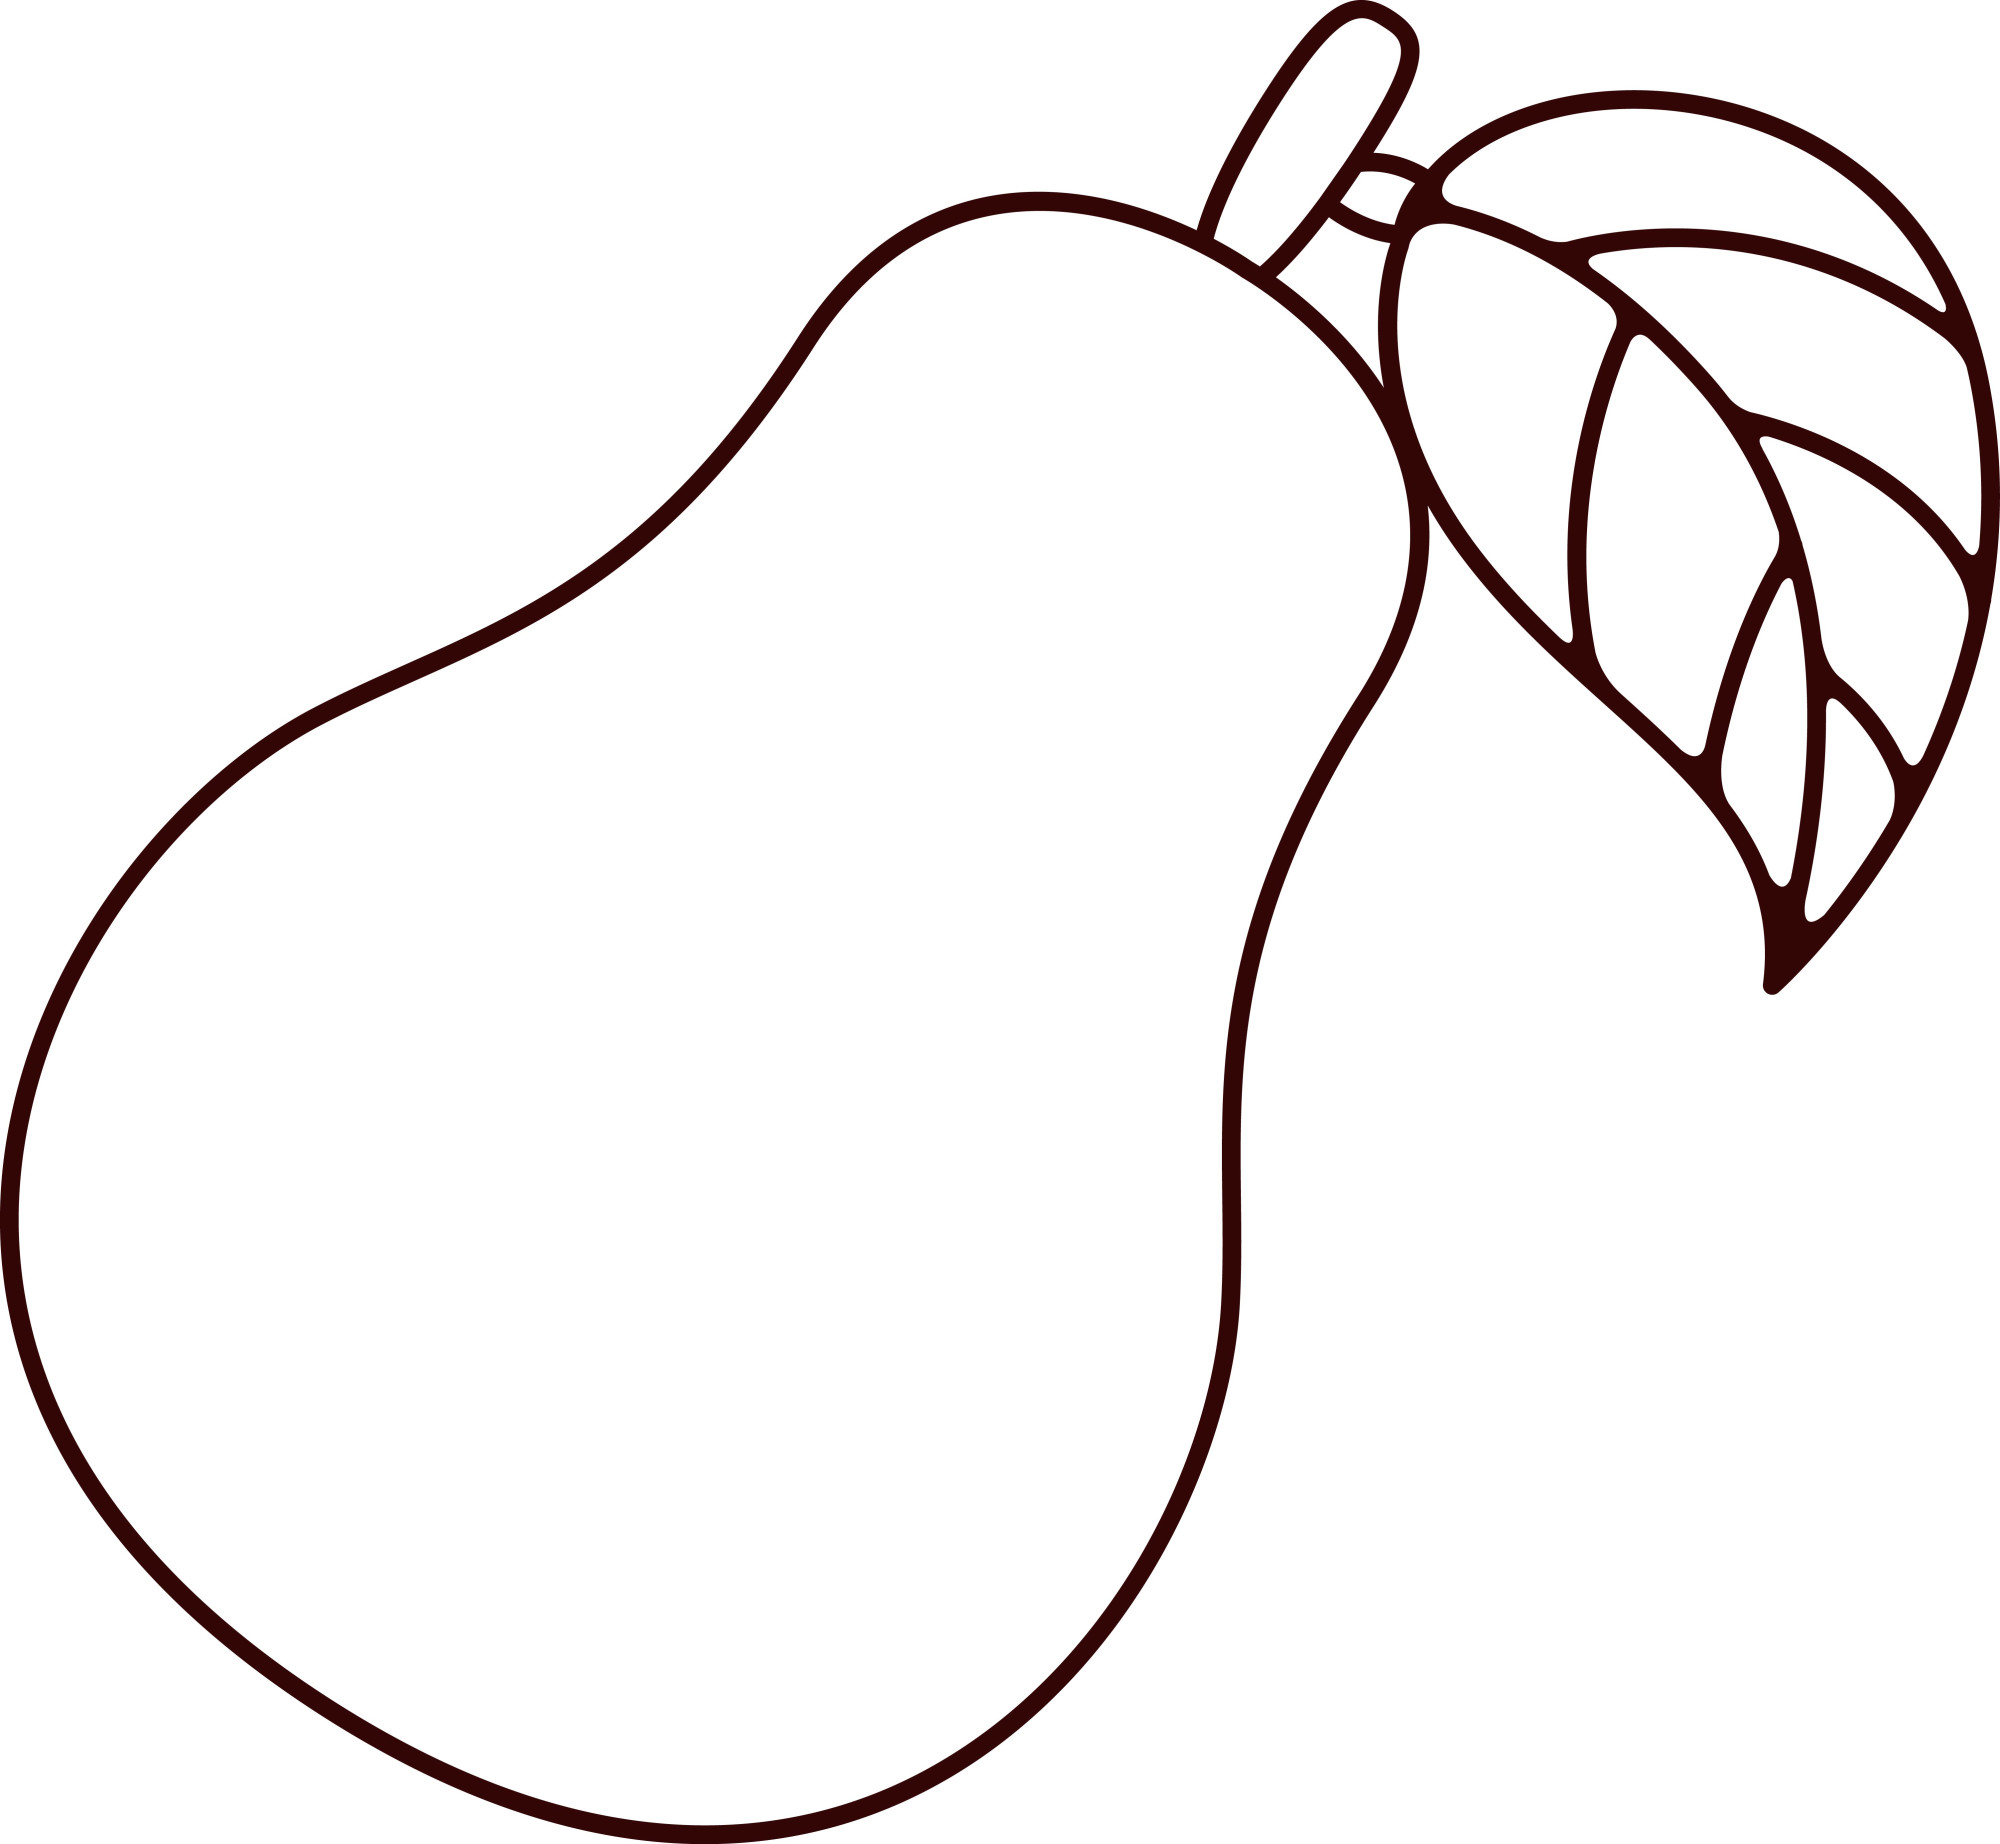 Раскраска для детей: груша с листиком